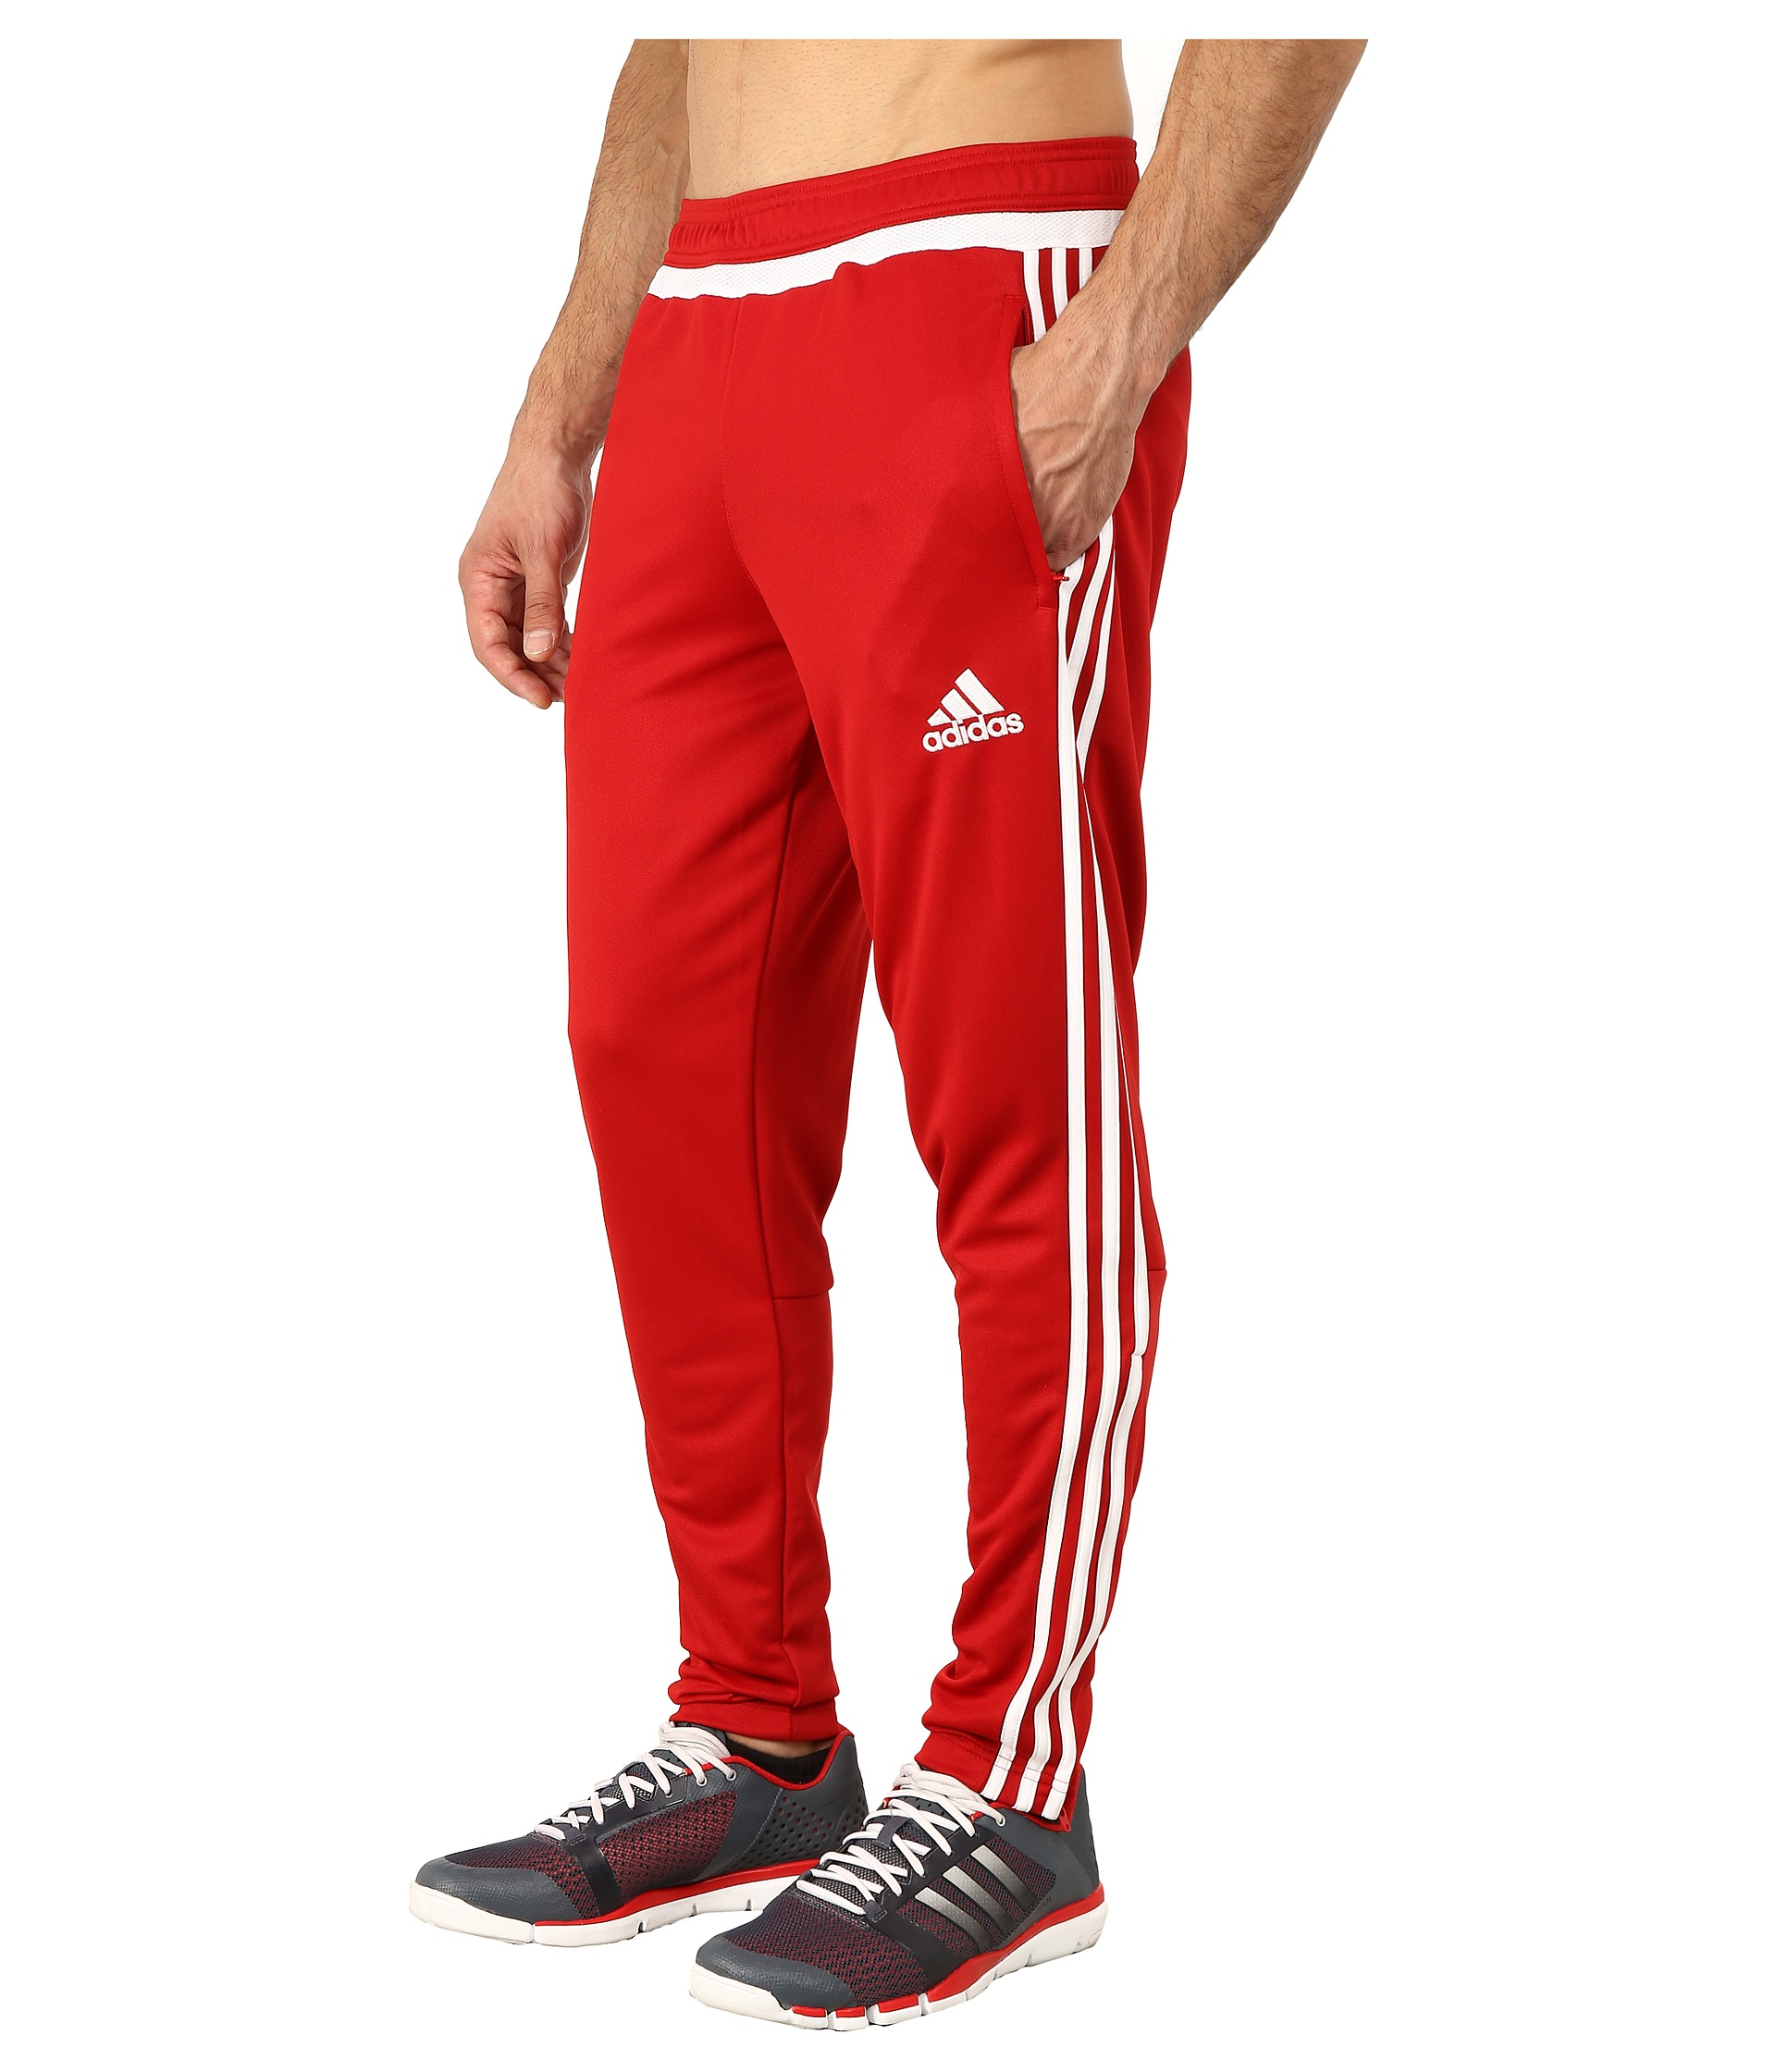 Lyst - Adidas Originals Tiro 15 Training Pant in Red for Men